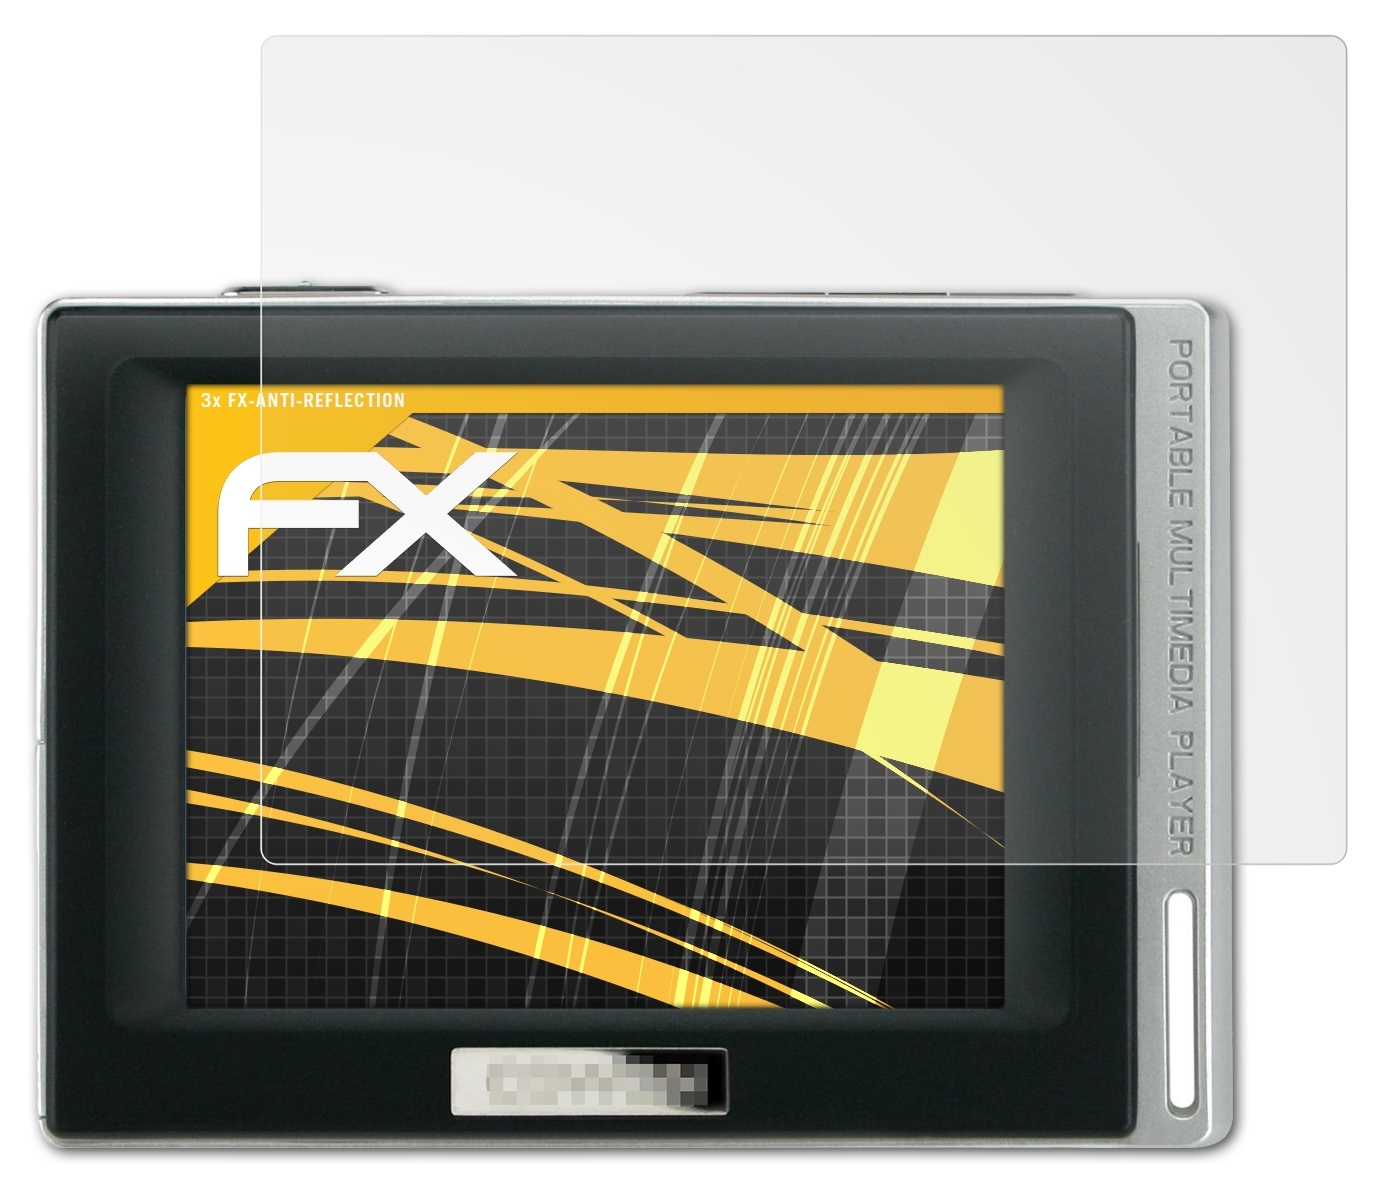 ATFOLIX 3x FX-Antireflex Displayschutz(für DAB) Cowon D2